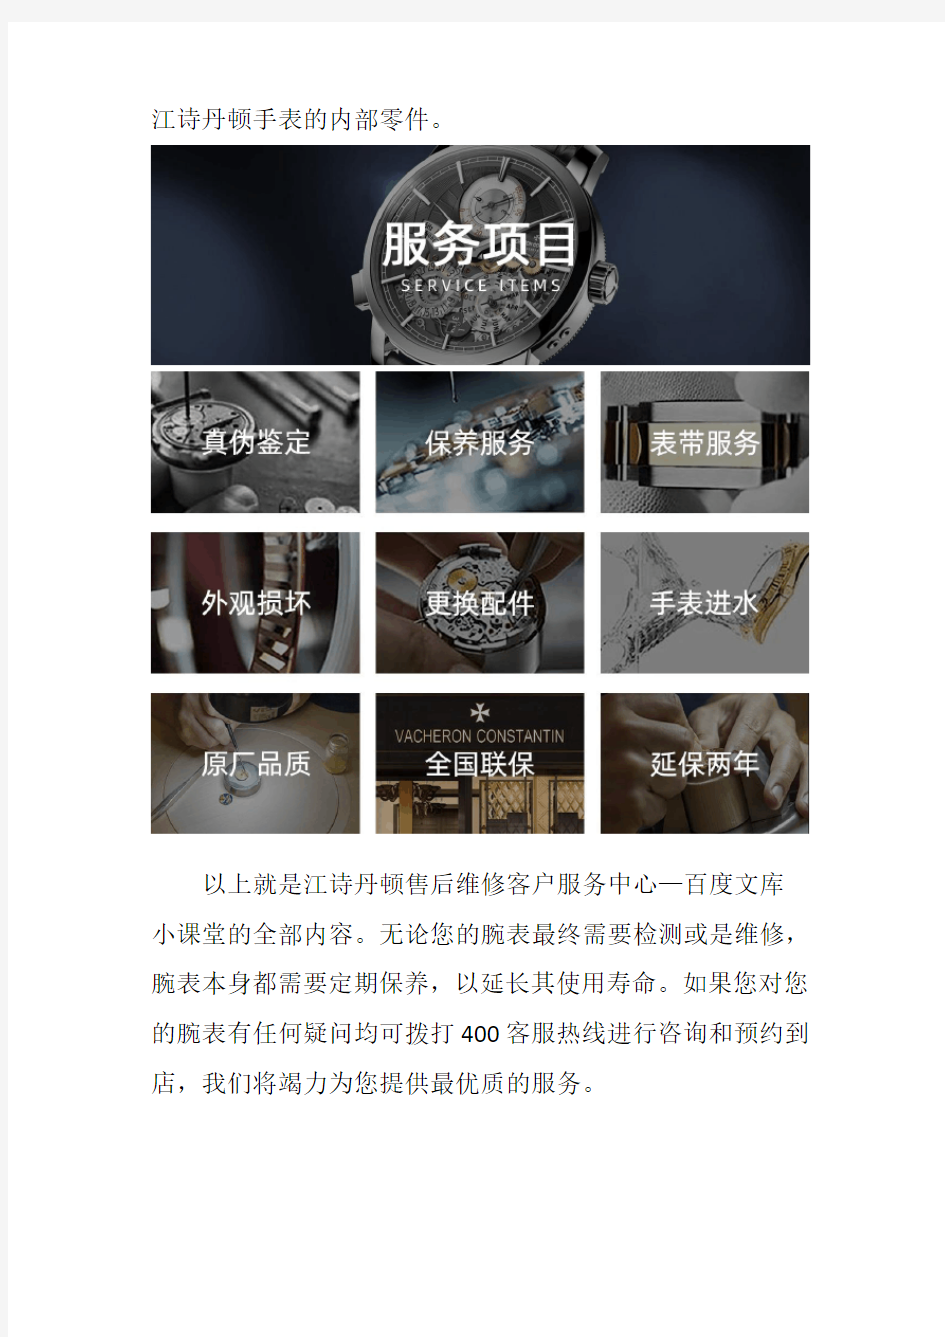 上海江诗丹顿手表售后--手表调校注意事项